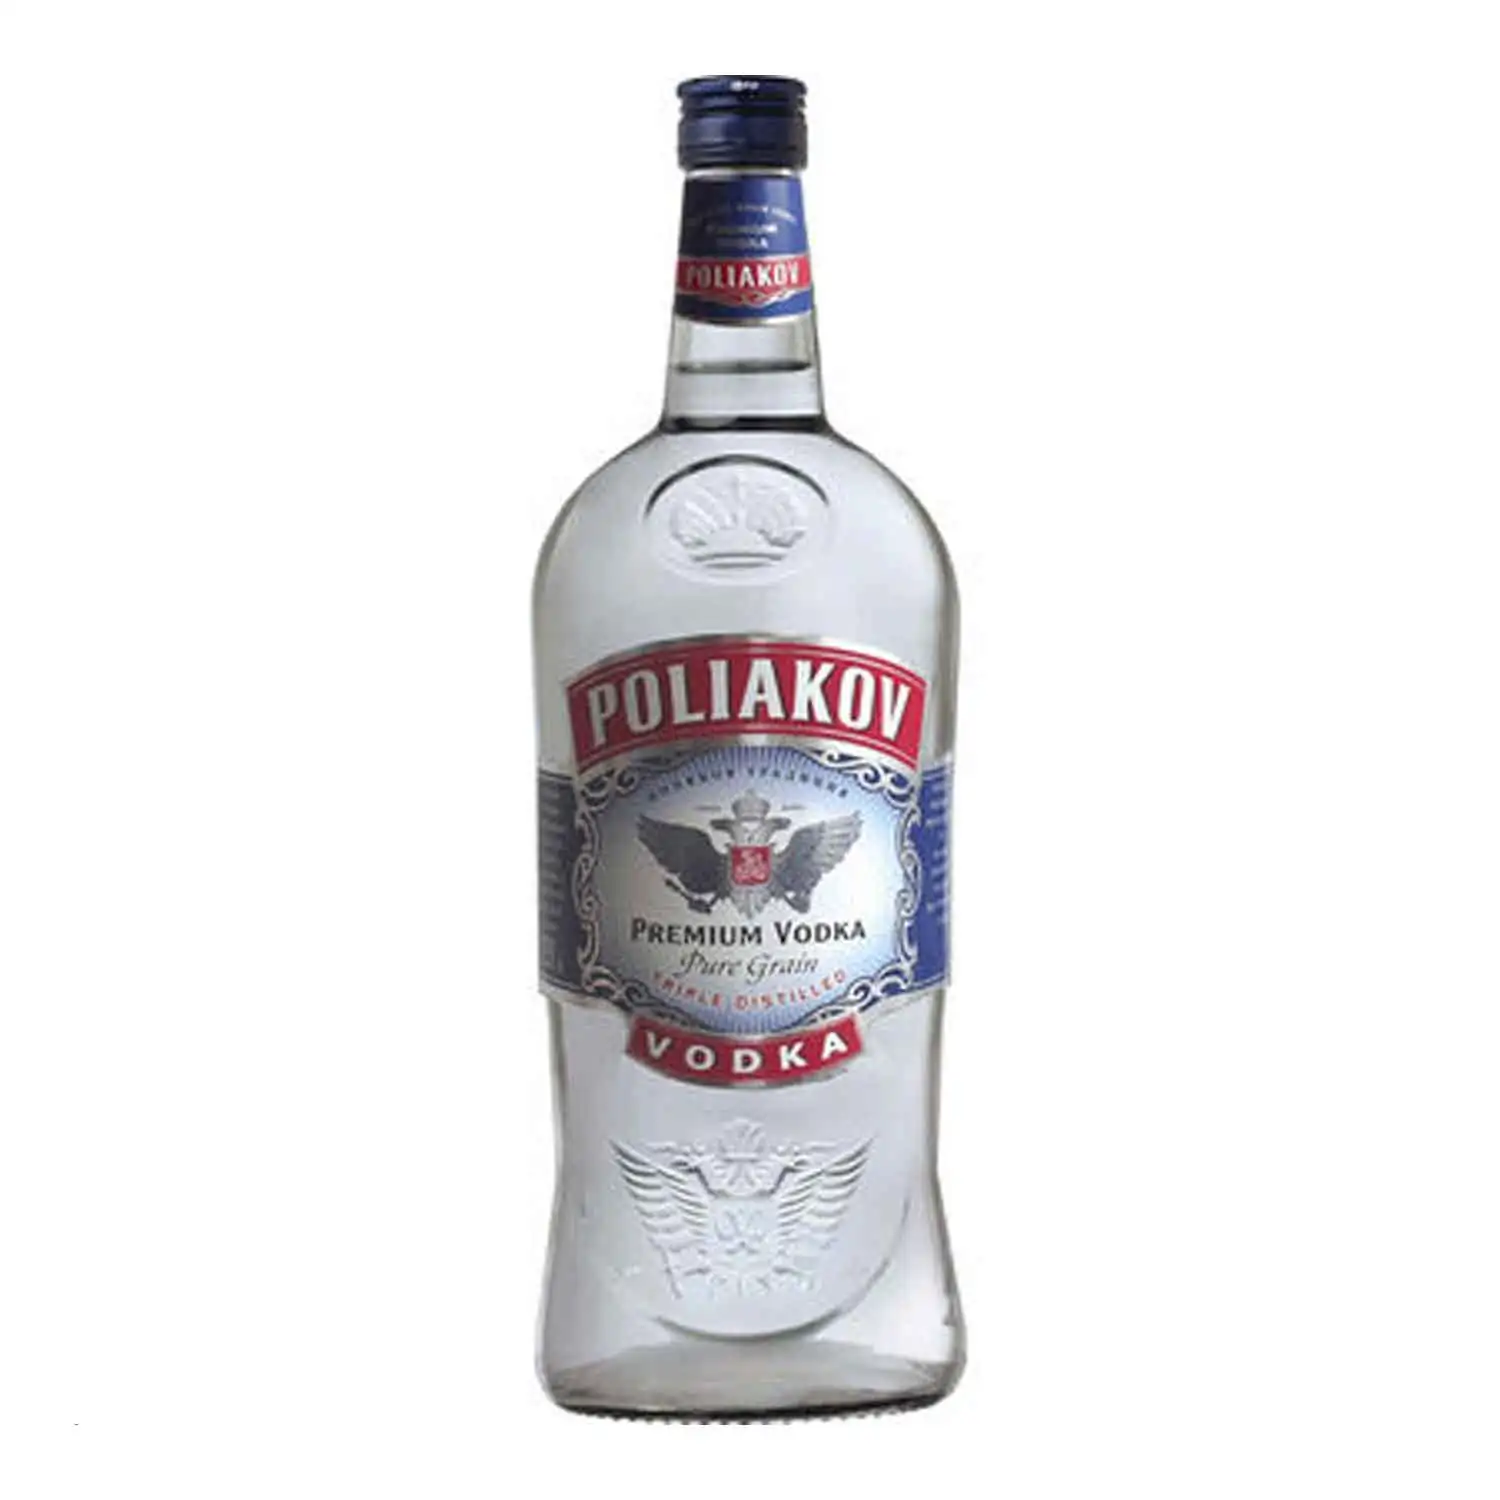 Poliakov vodka 2l Alc 37,5% - Buy at Real Tobacco